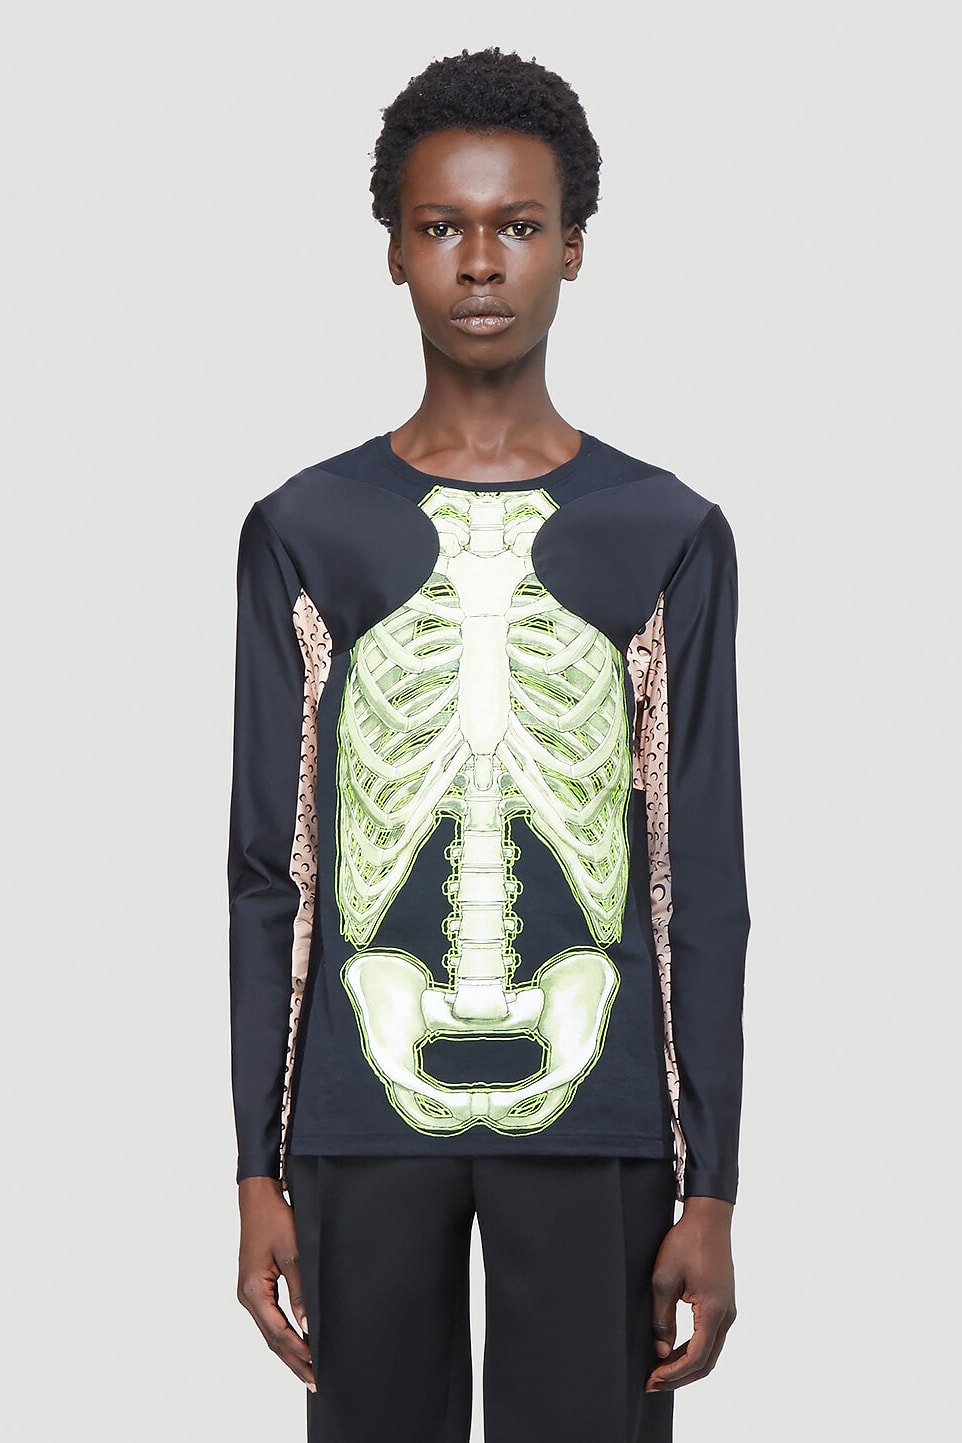 Skeleton on beach in brain skull shirt, hoodie, sweater, long